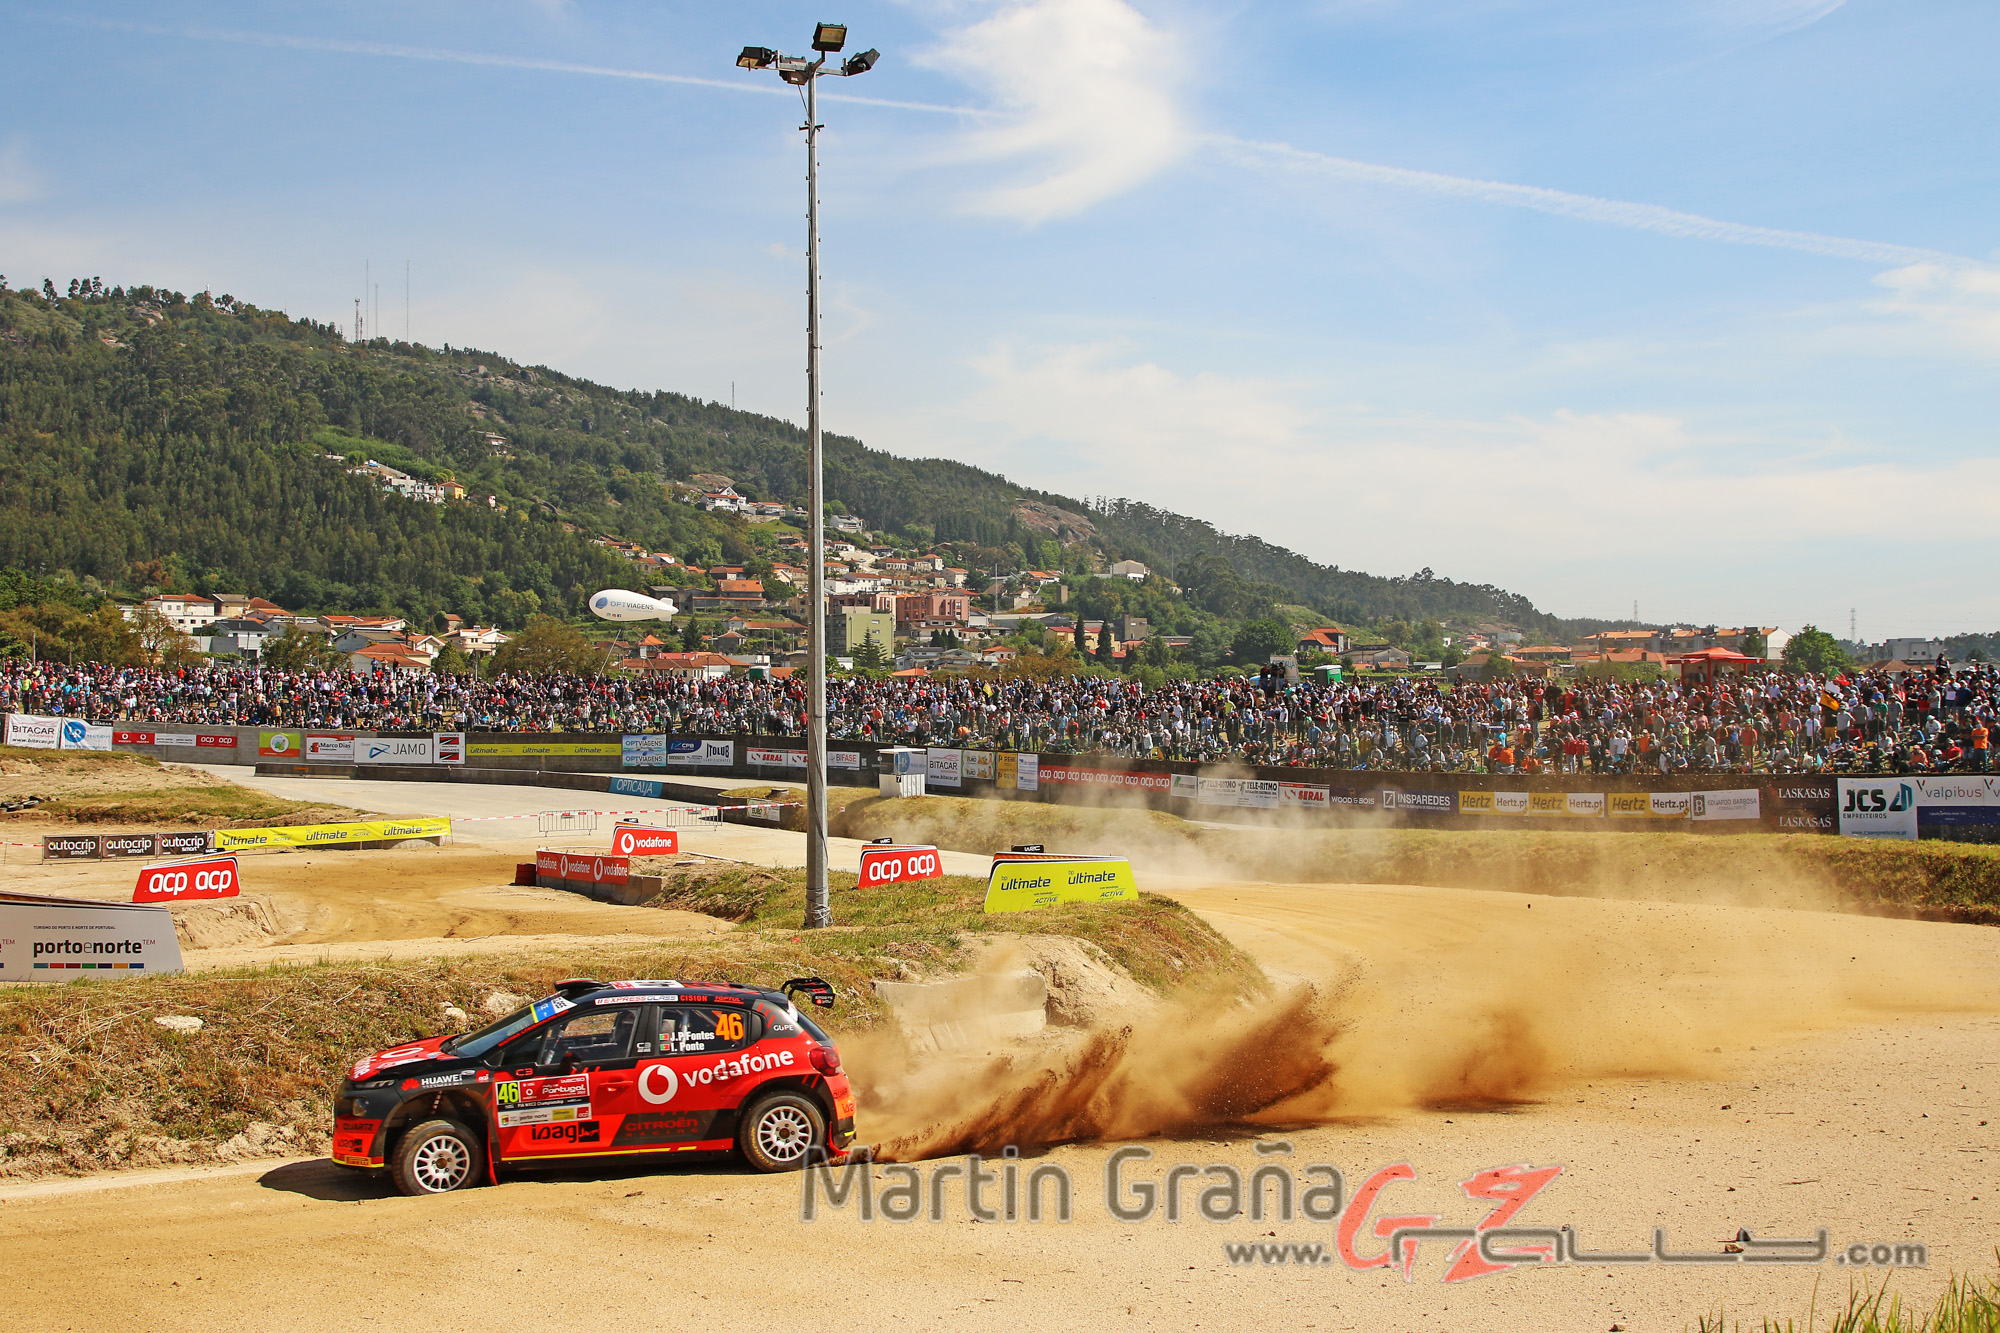 Rally de Portugal WRC Dia 1 - Martín Graña